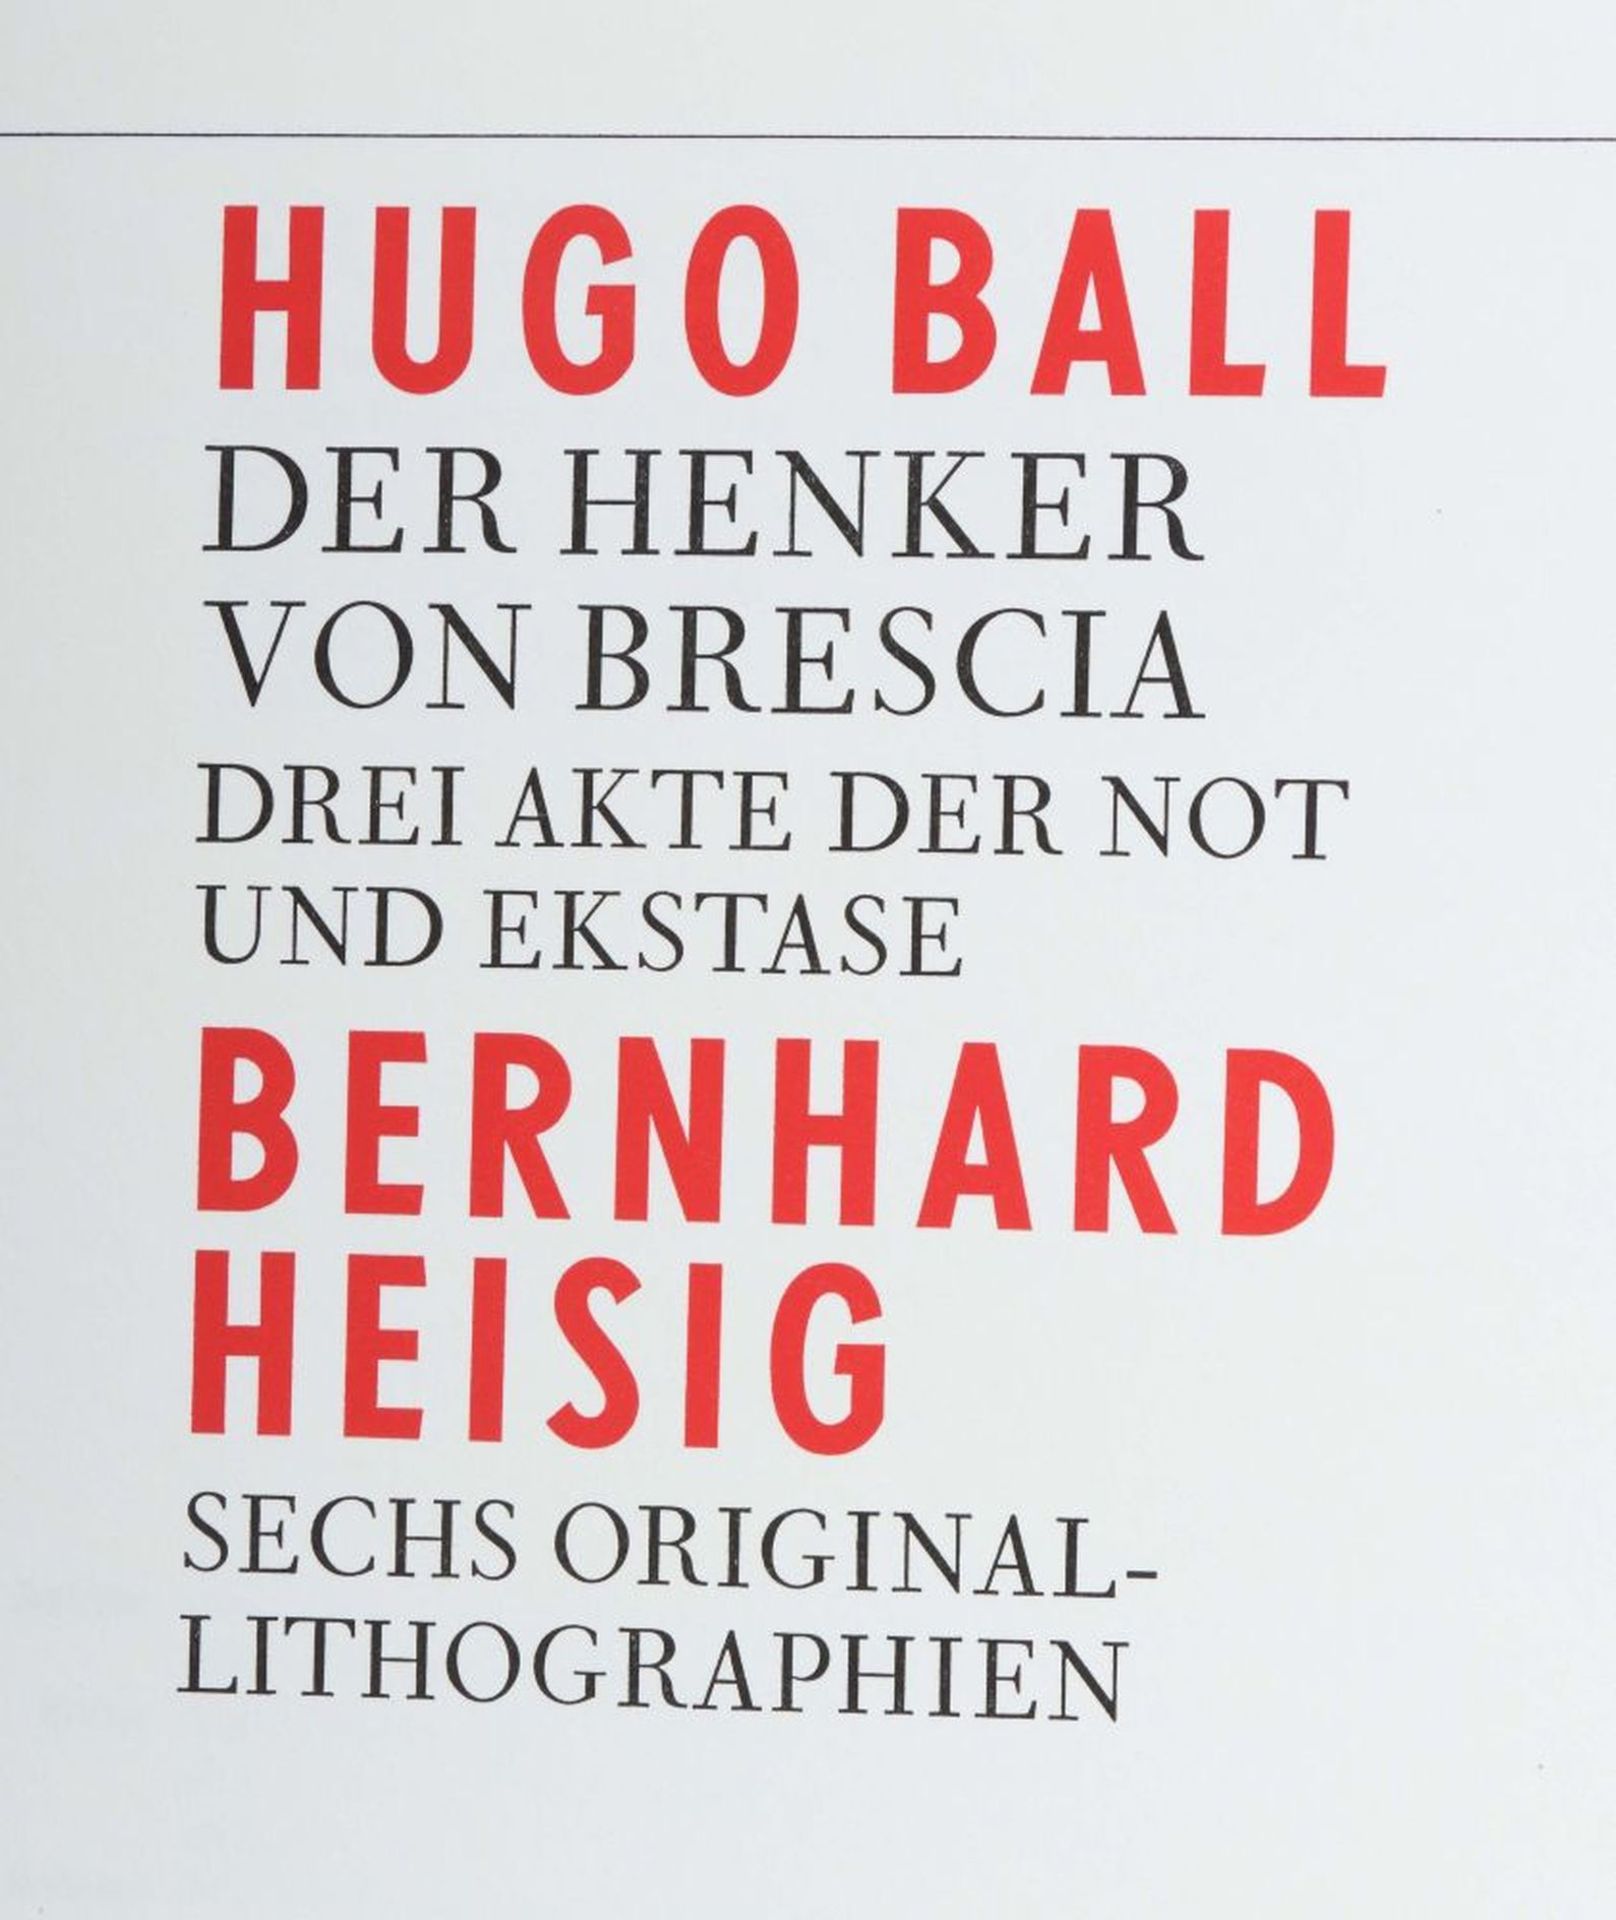 Ball, Hugo Der Henker von Brescia - - Bild 2 aus 8